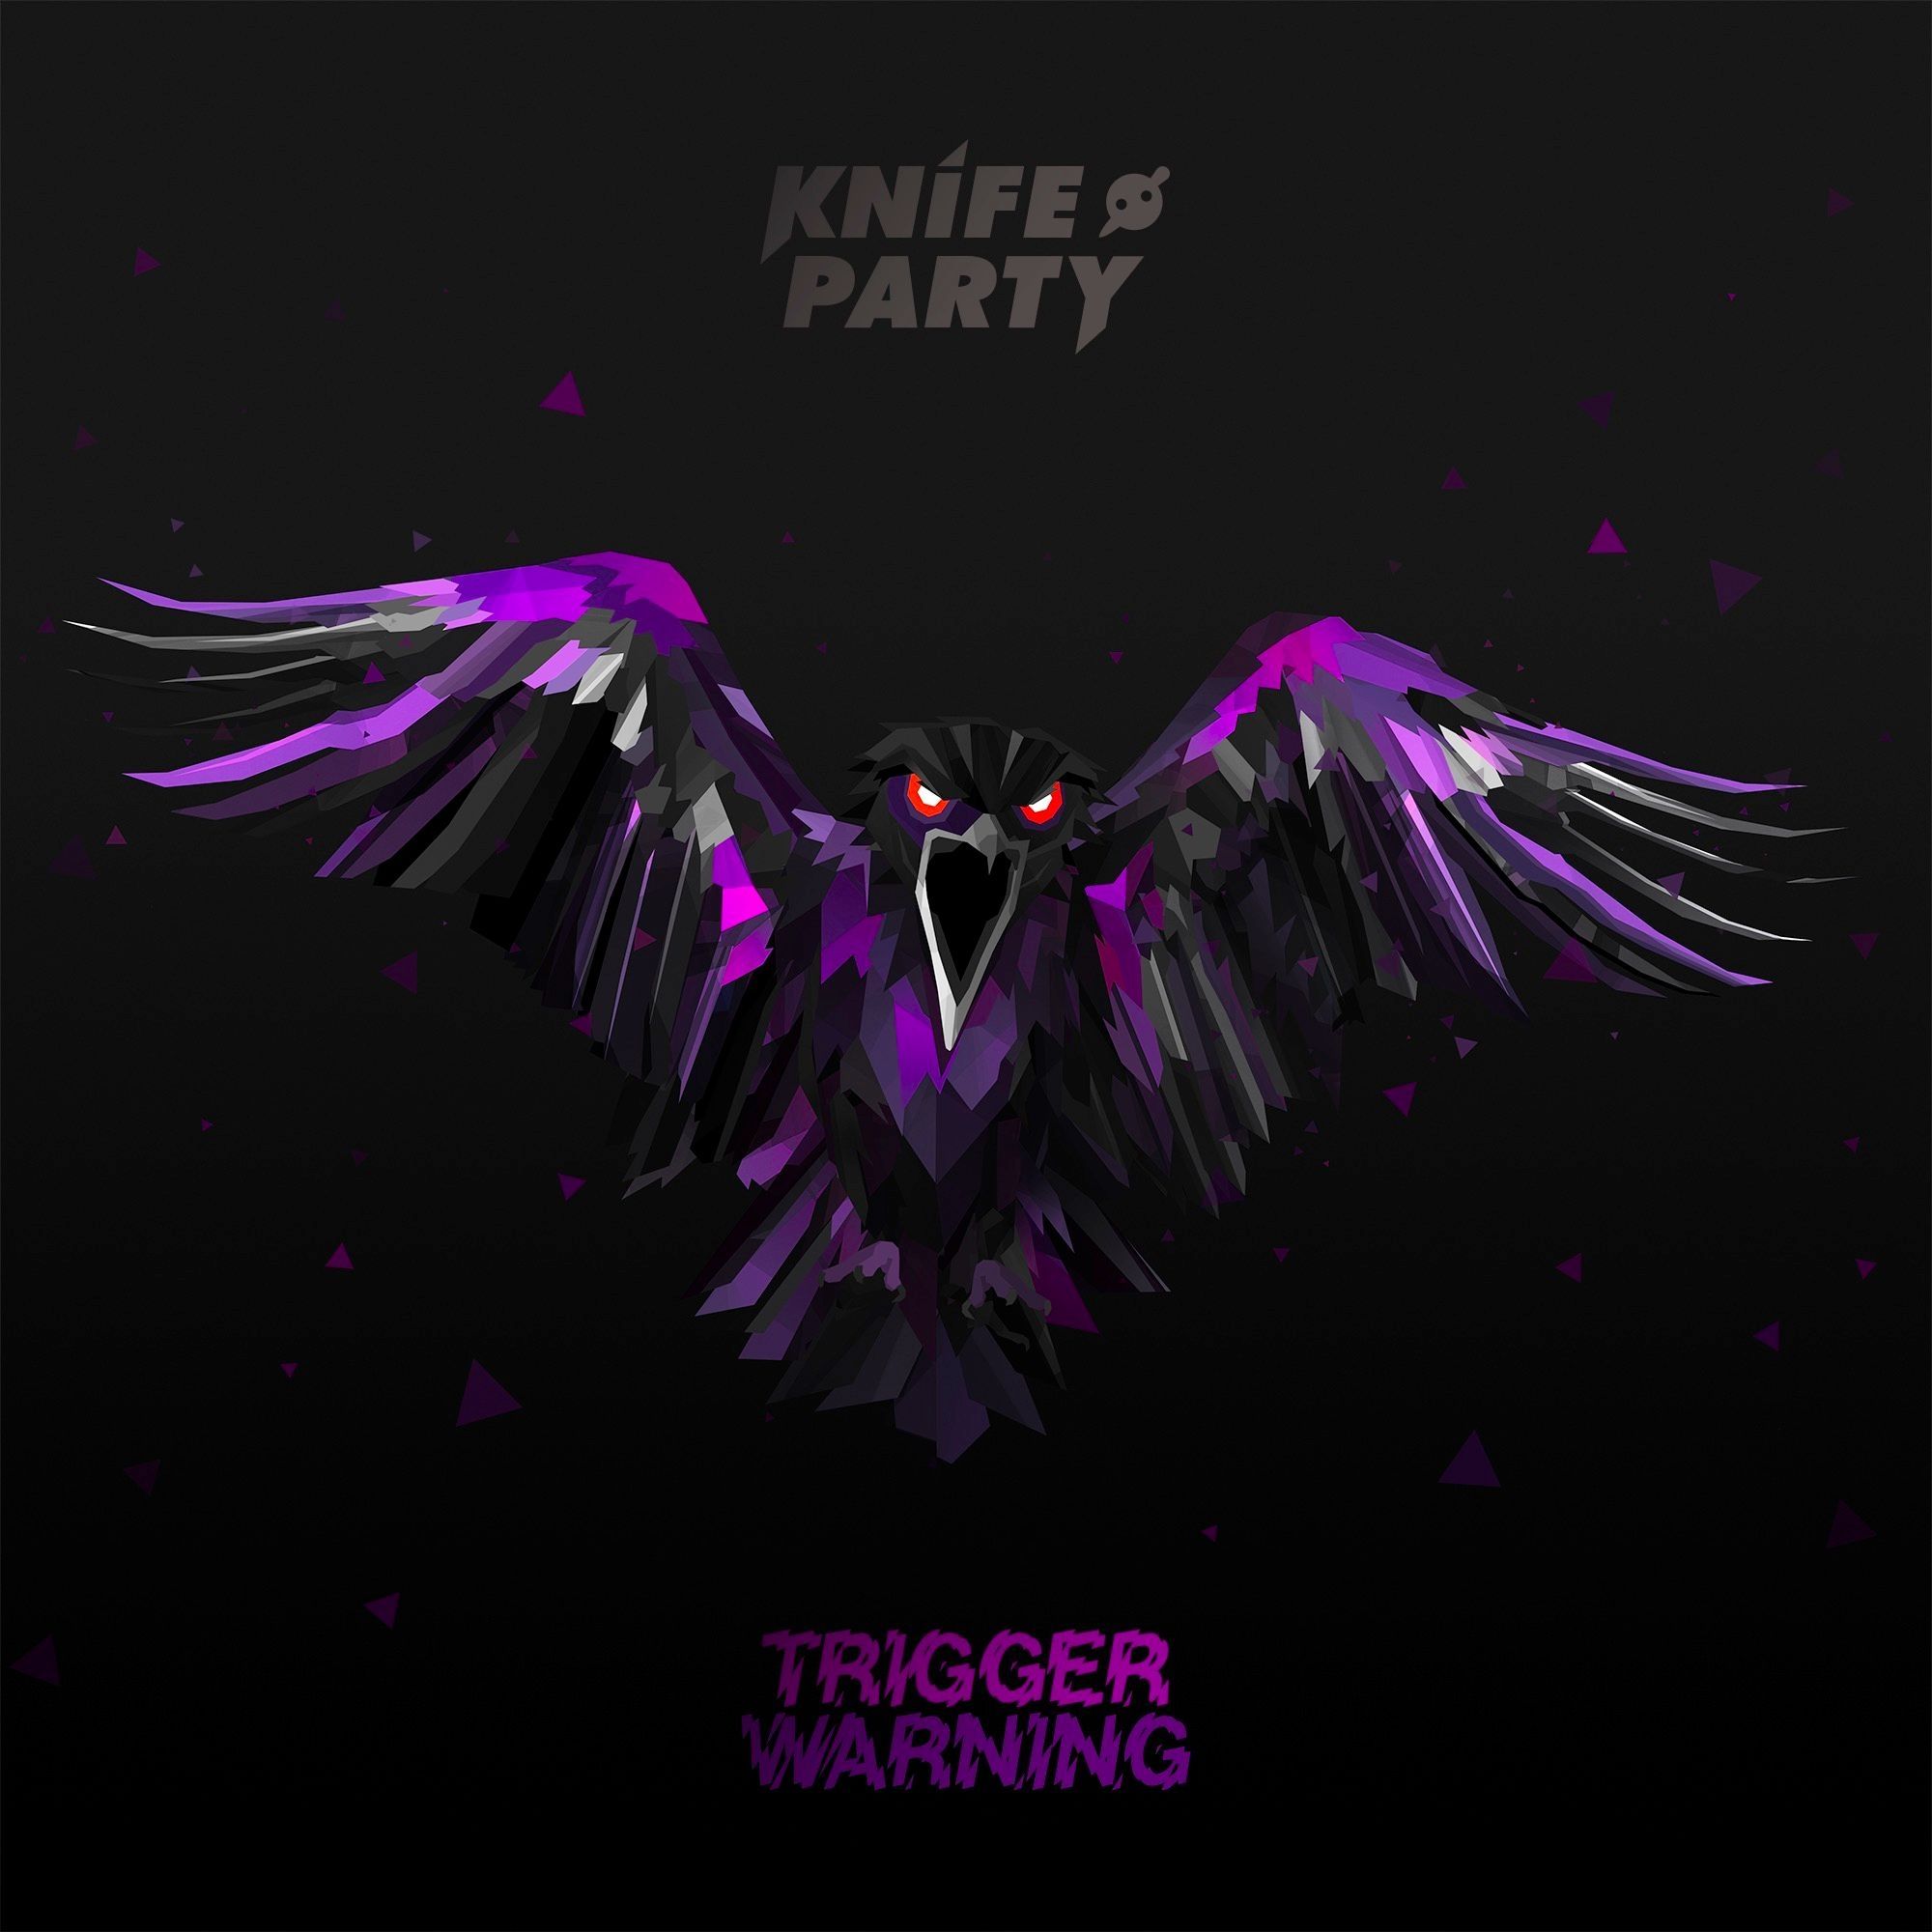 Imagem do álbum Trigger Warning do(a) artista Knife Party